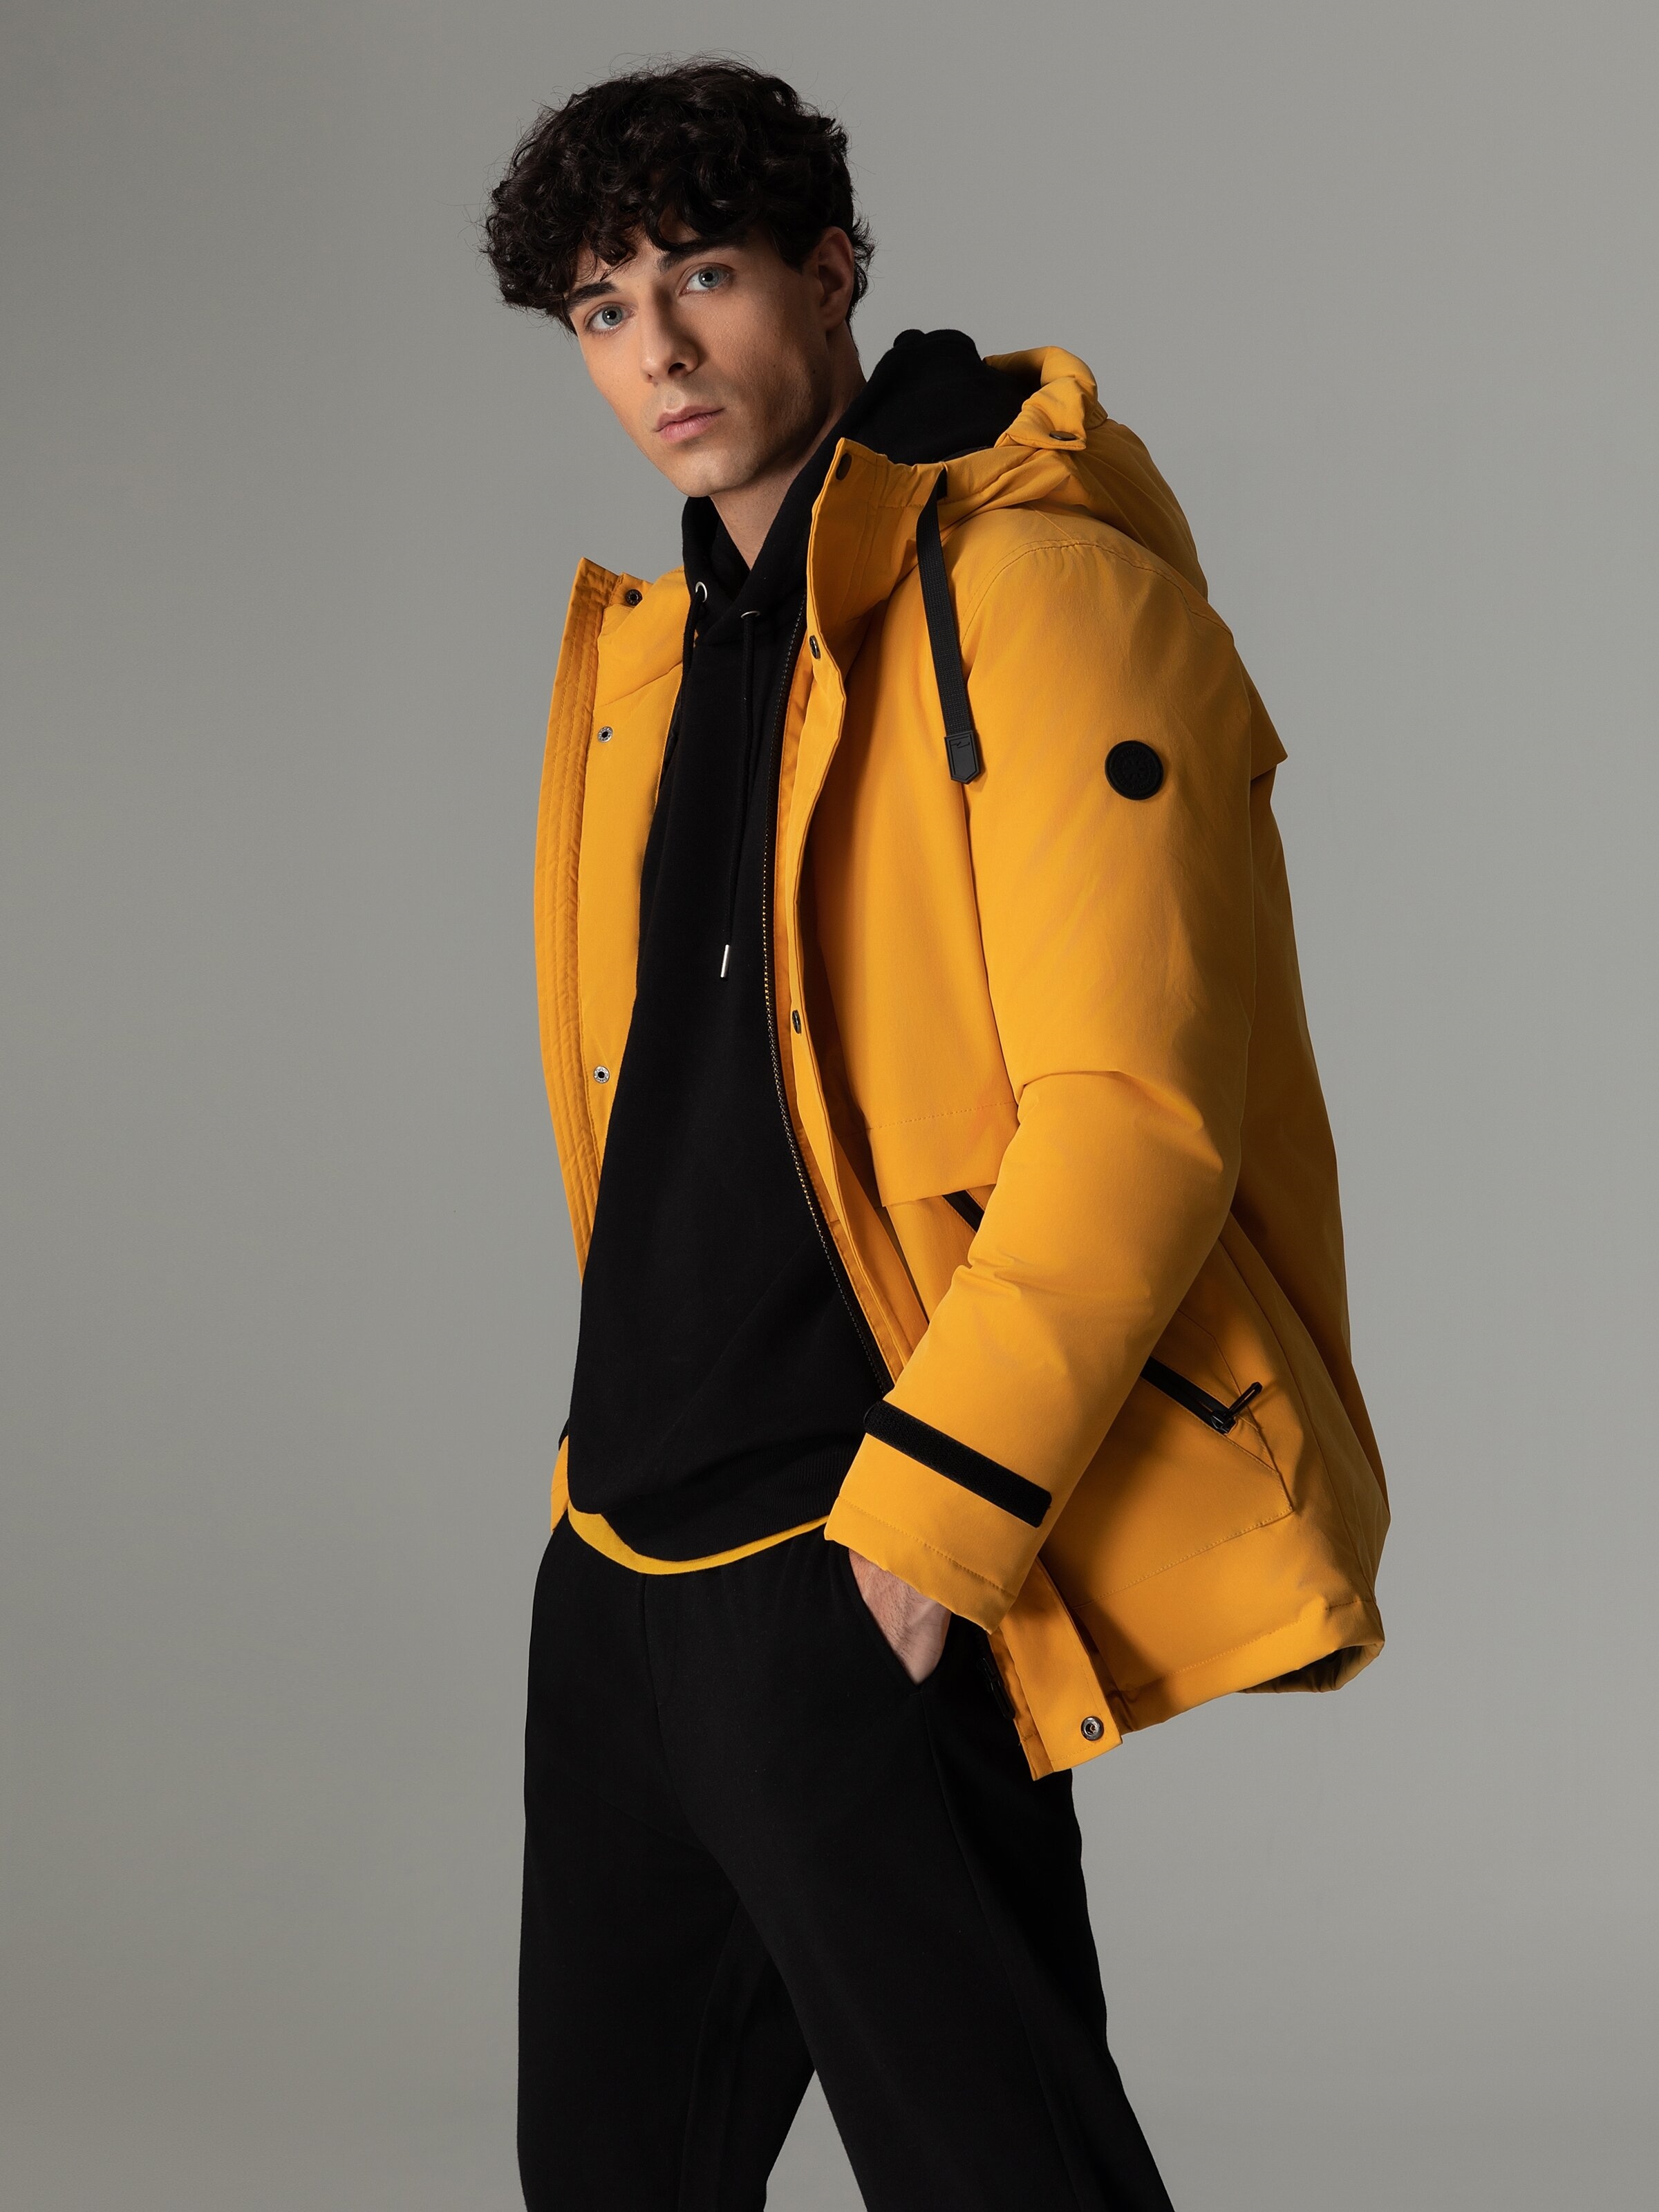 manteau jaune homme